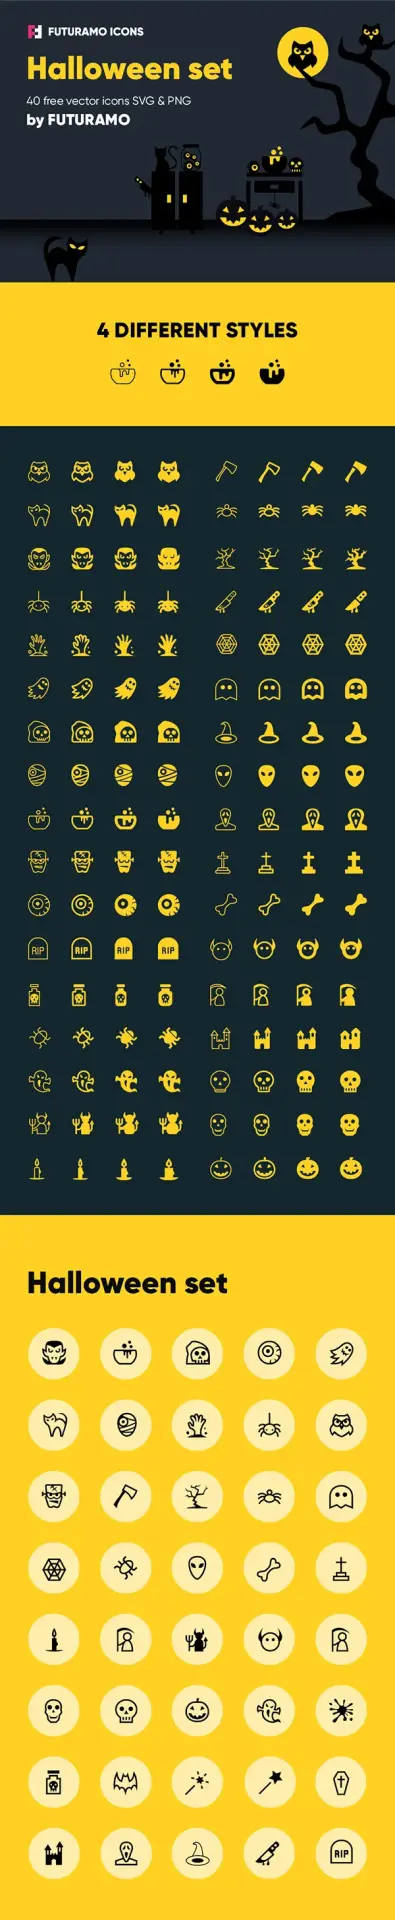 40 icônes gratuites avec 4 style différents sur le thème d'Halloween